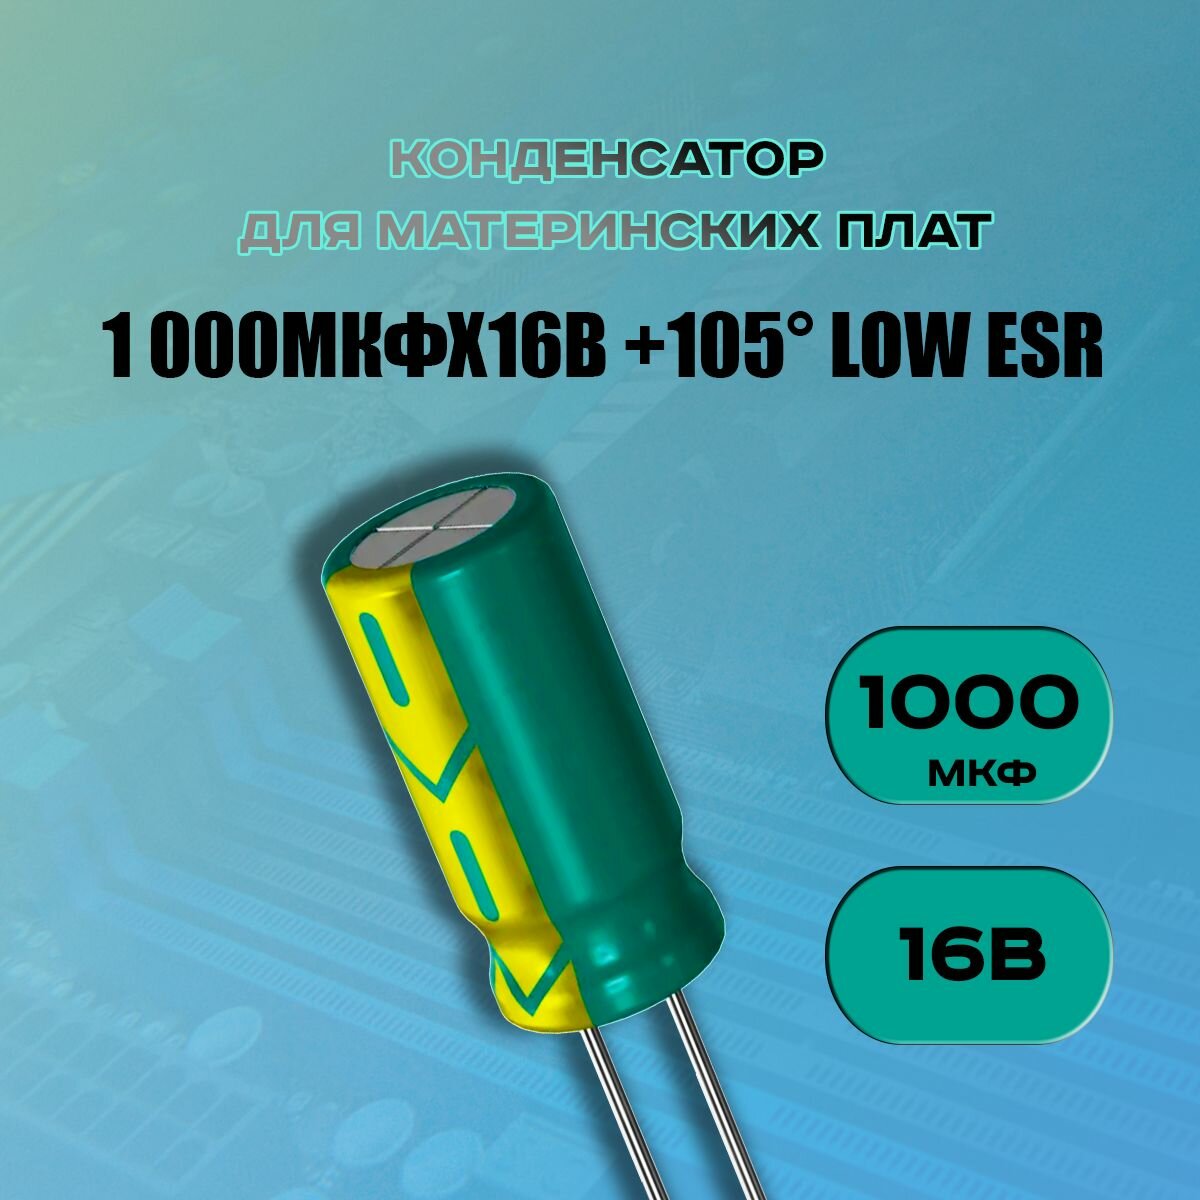 Конденсатор для материнской платы 1000 микрофарат 16 Вольт (1000uf 16V WL +105 LOW ESR) - 1 шт.